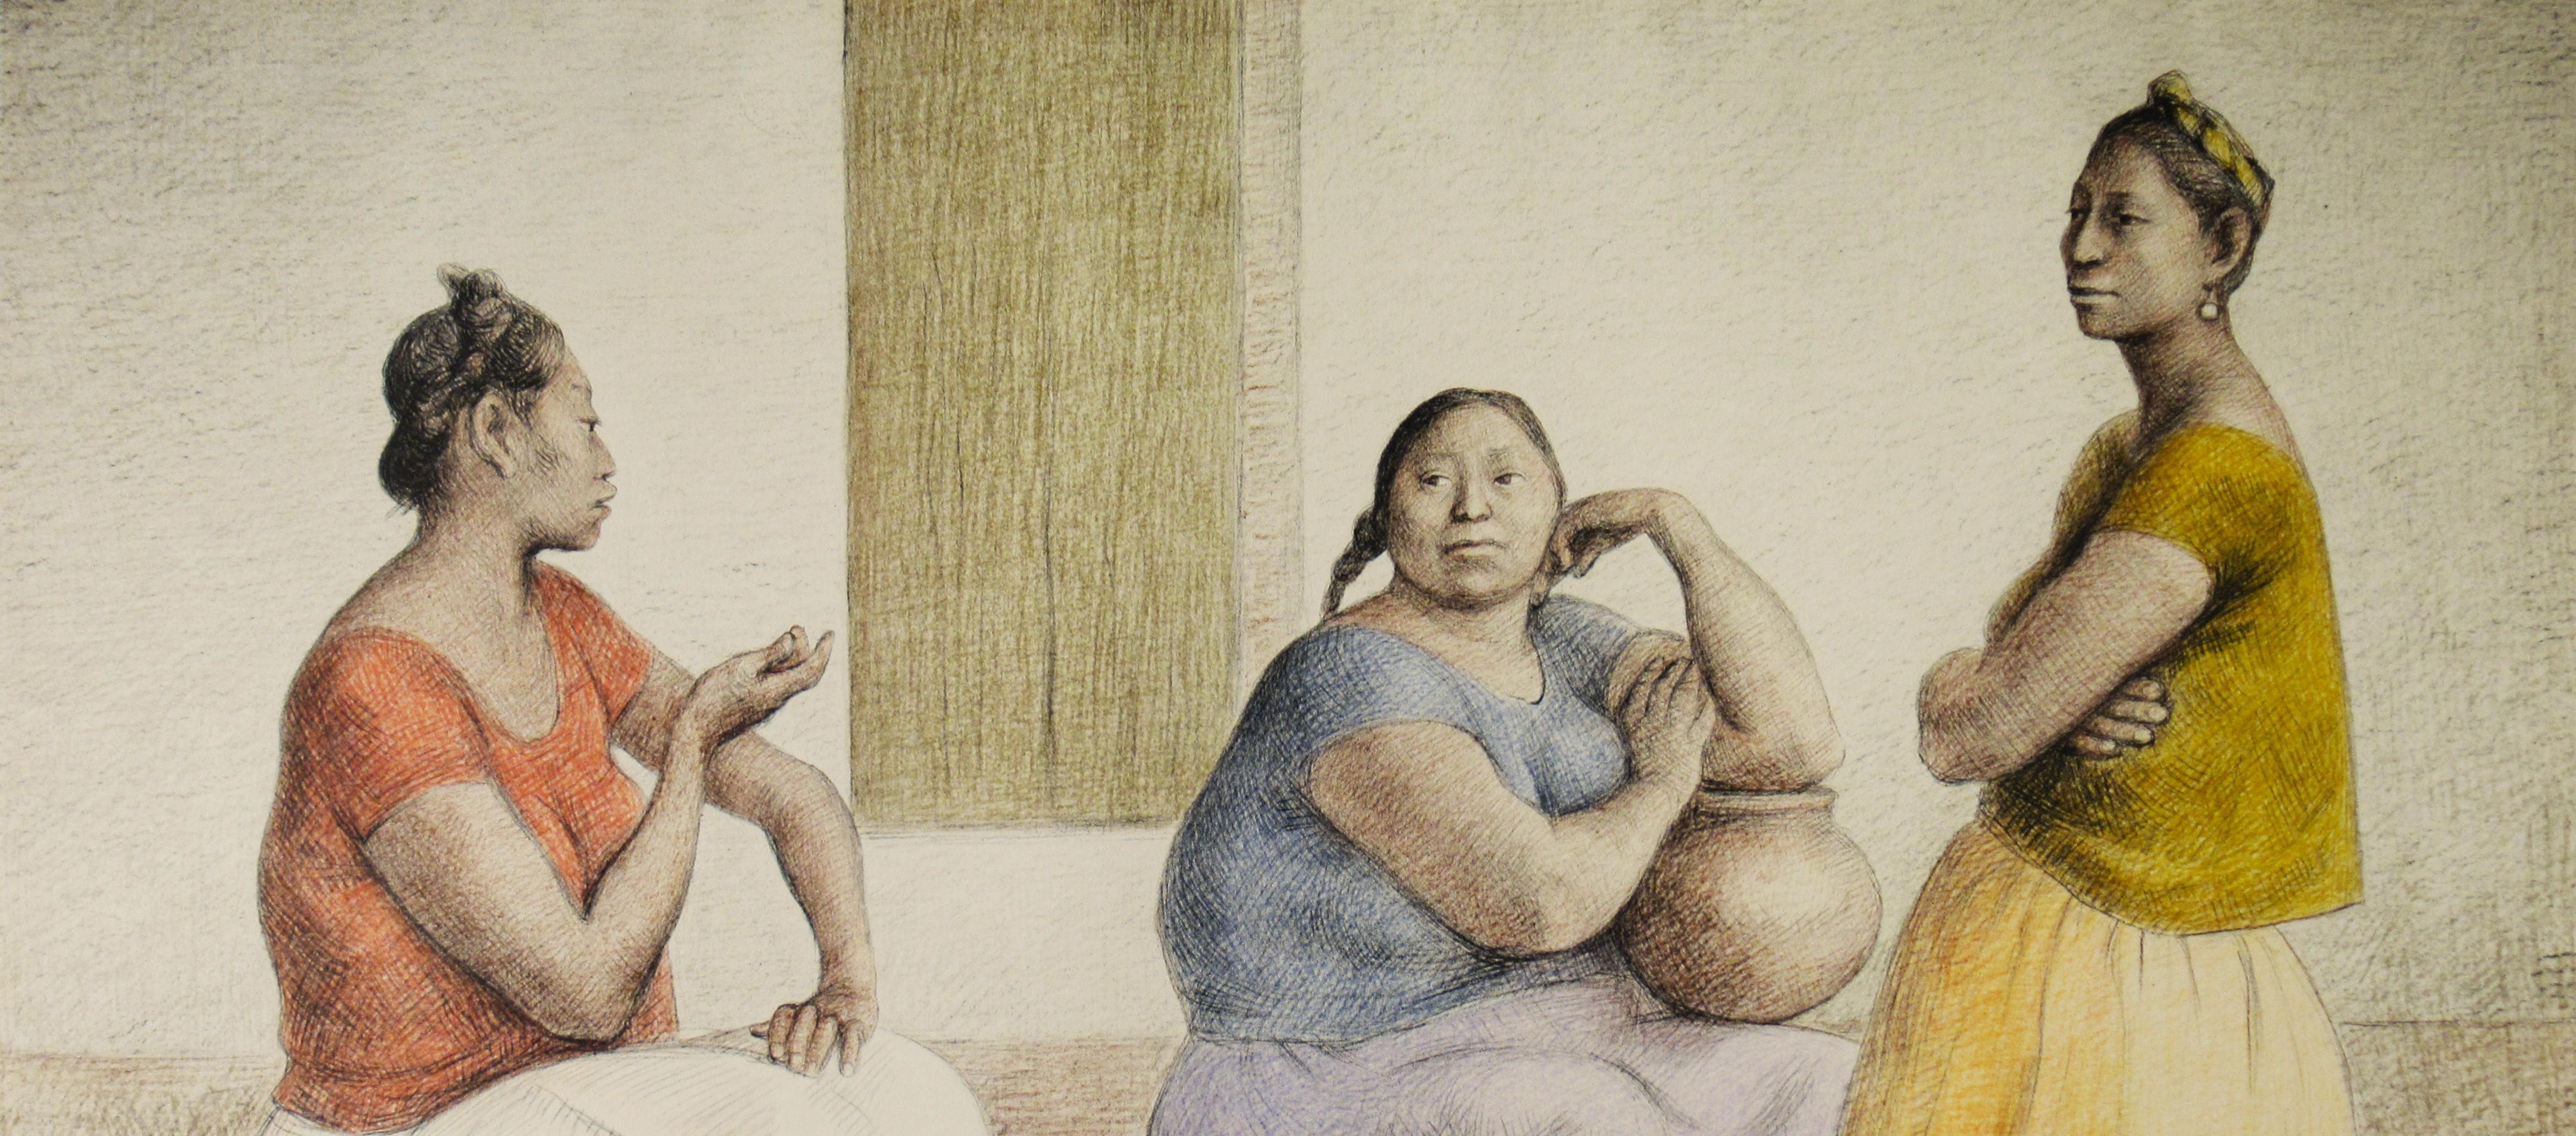 Le Platicando de Juchiteca (Femmes juchécoises discutant) - Print de Francisco Zúñiga